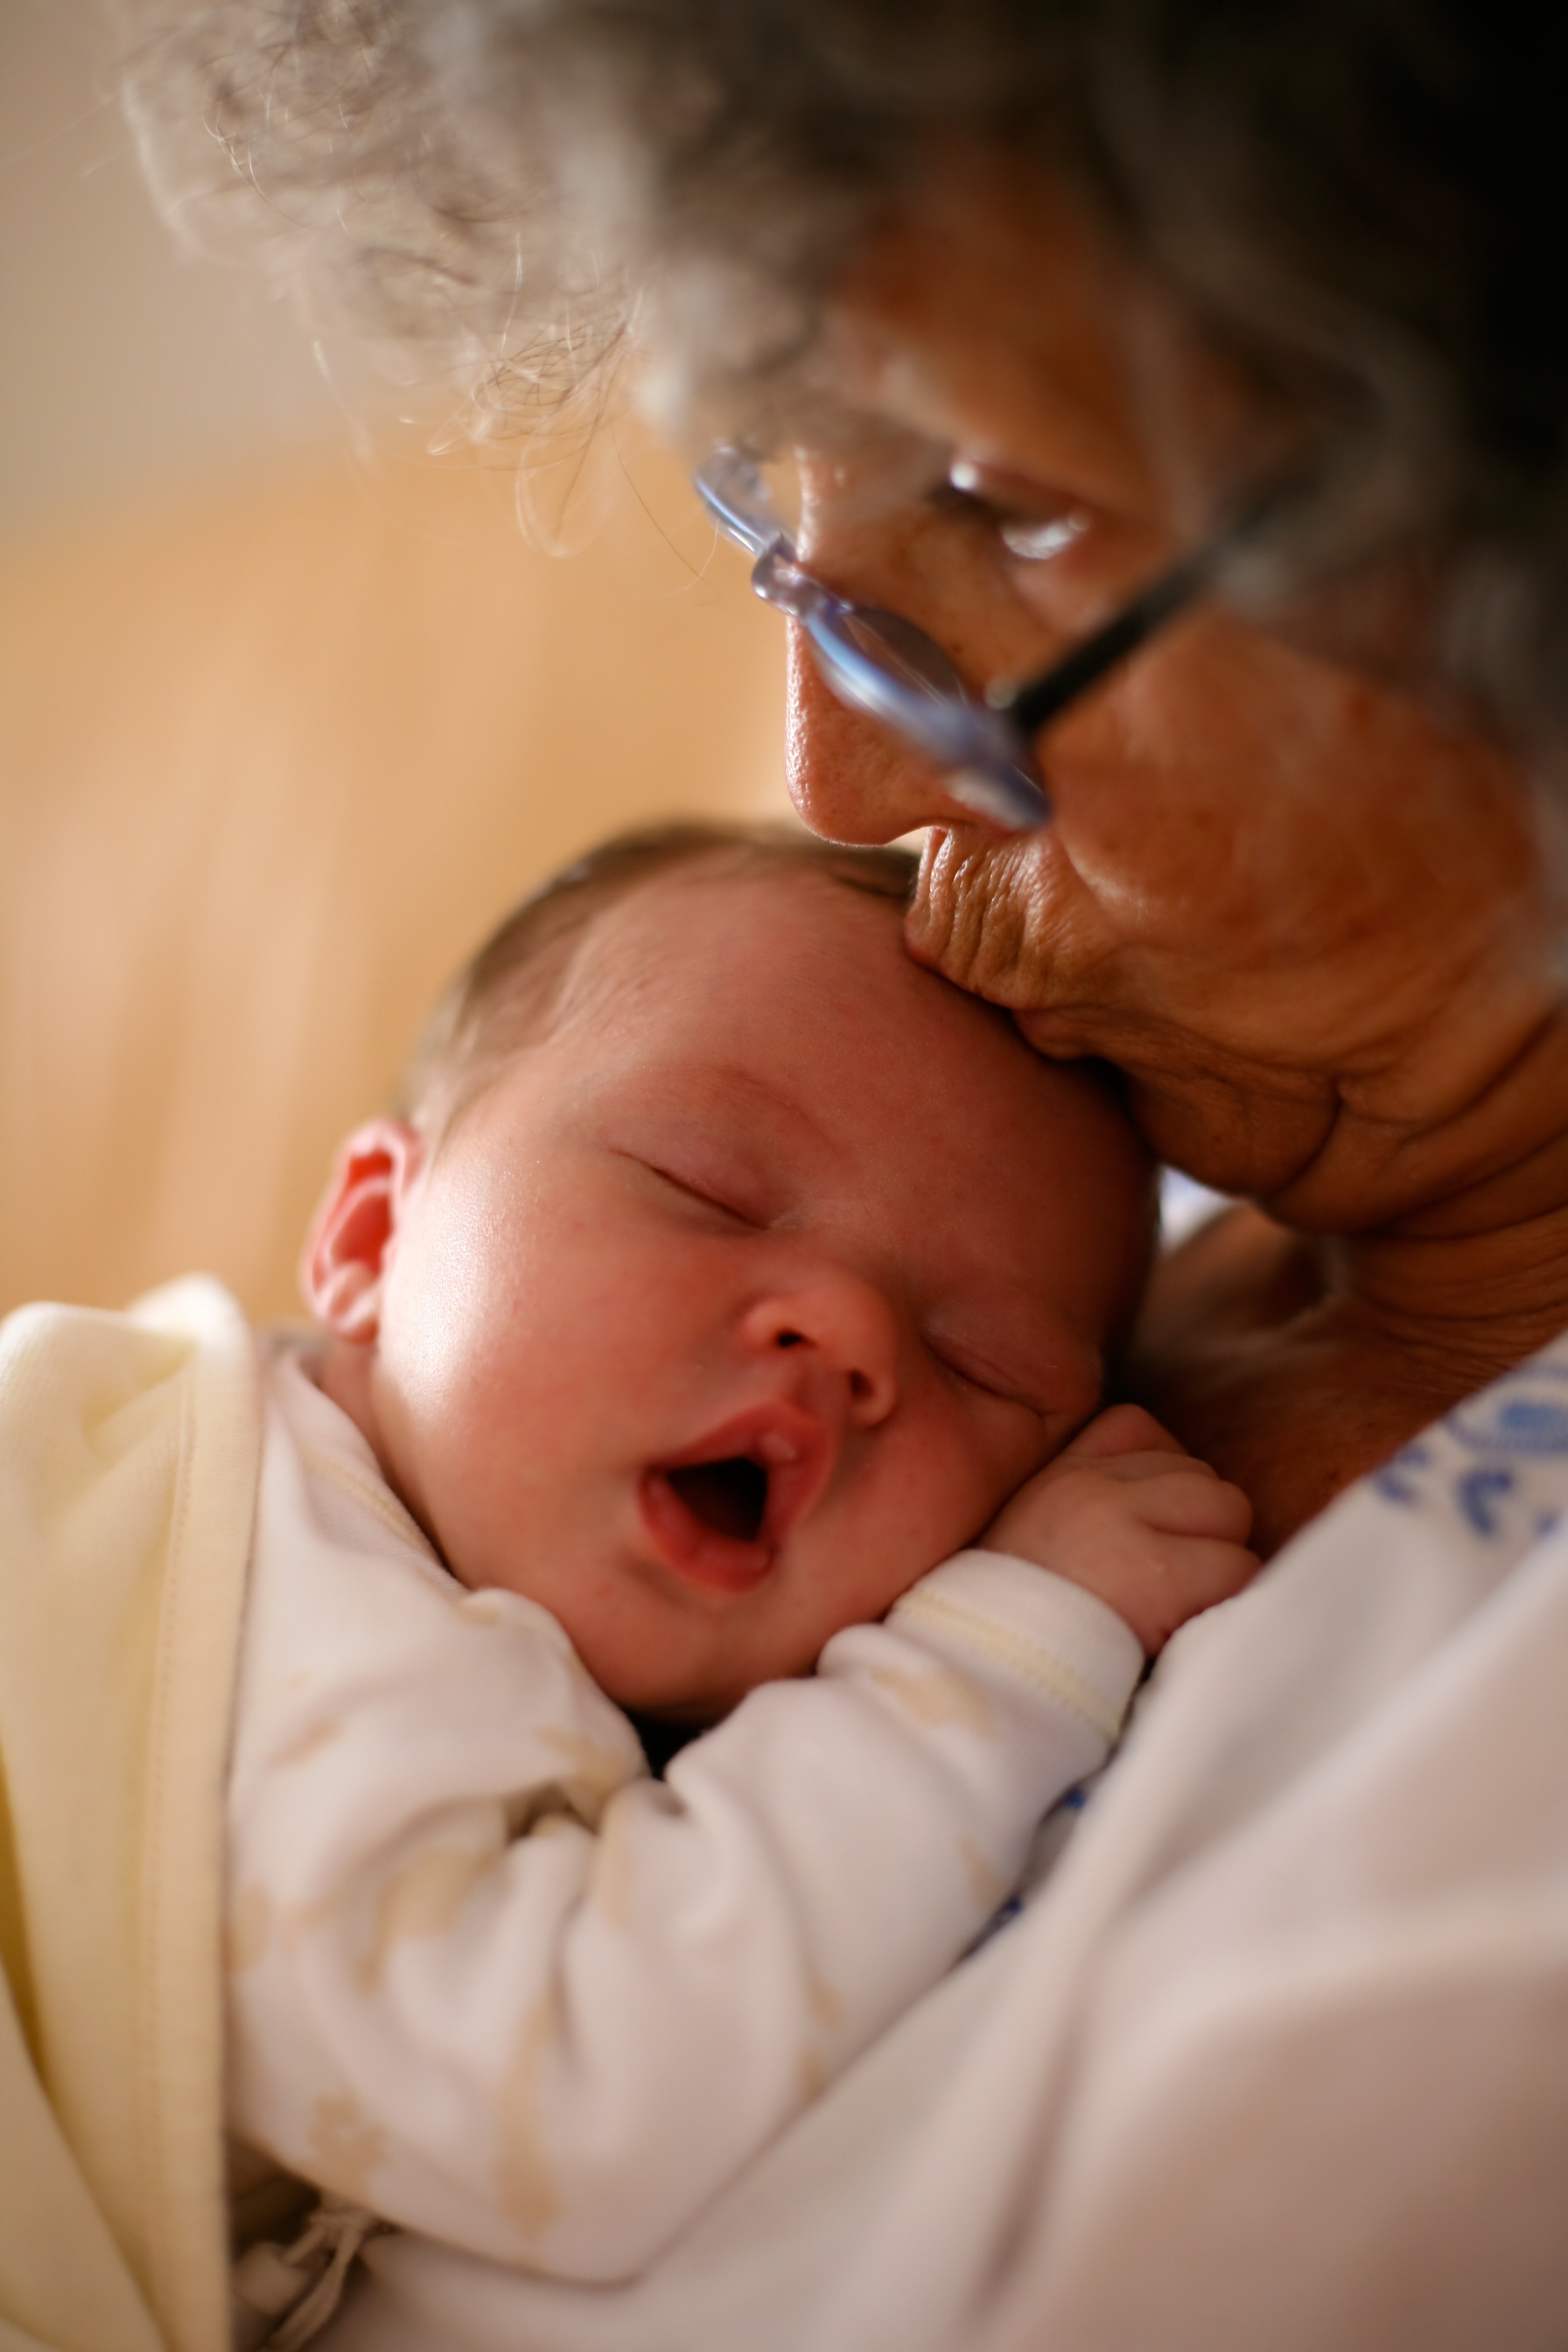 Abuela sujetando a un bebé y dándole un beso en la cabeza. | Fuente: Shutterstock